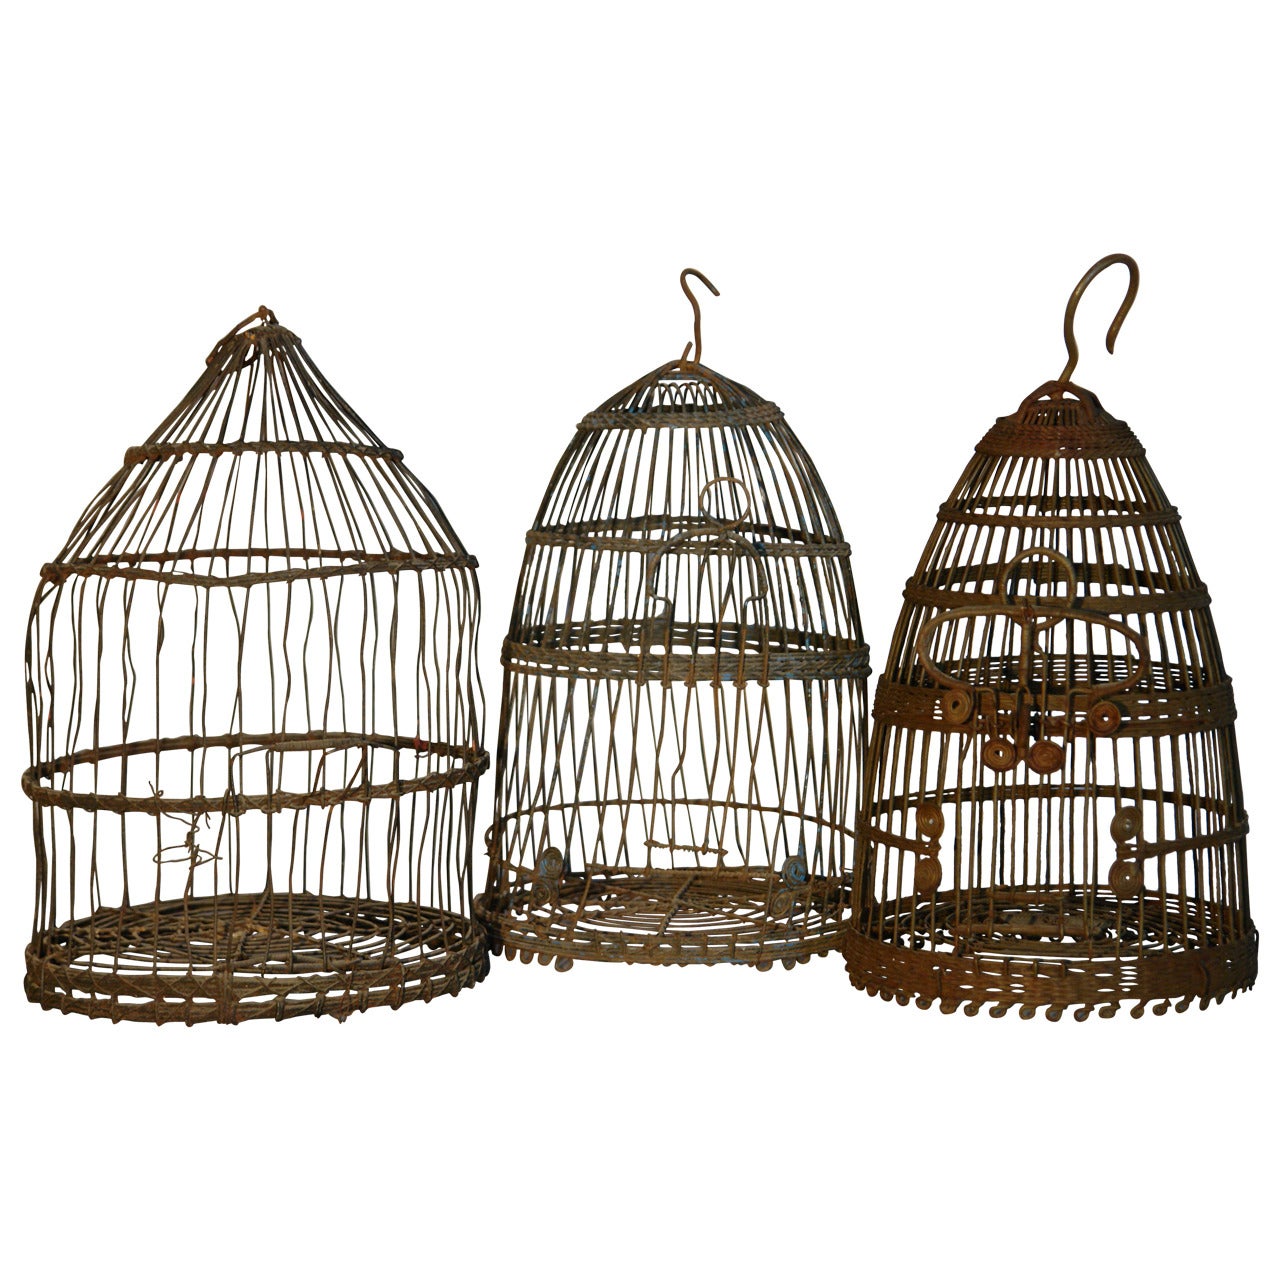 Three Tunisian wirework bird cages